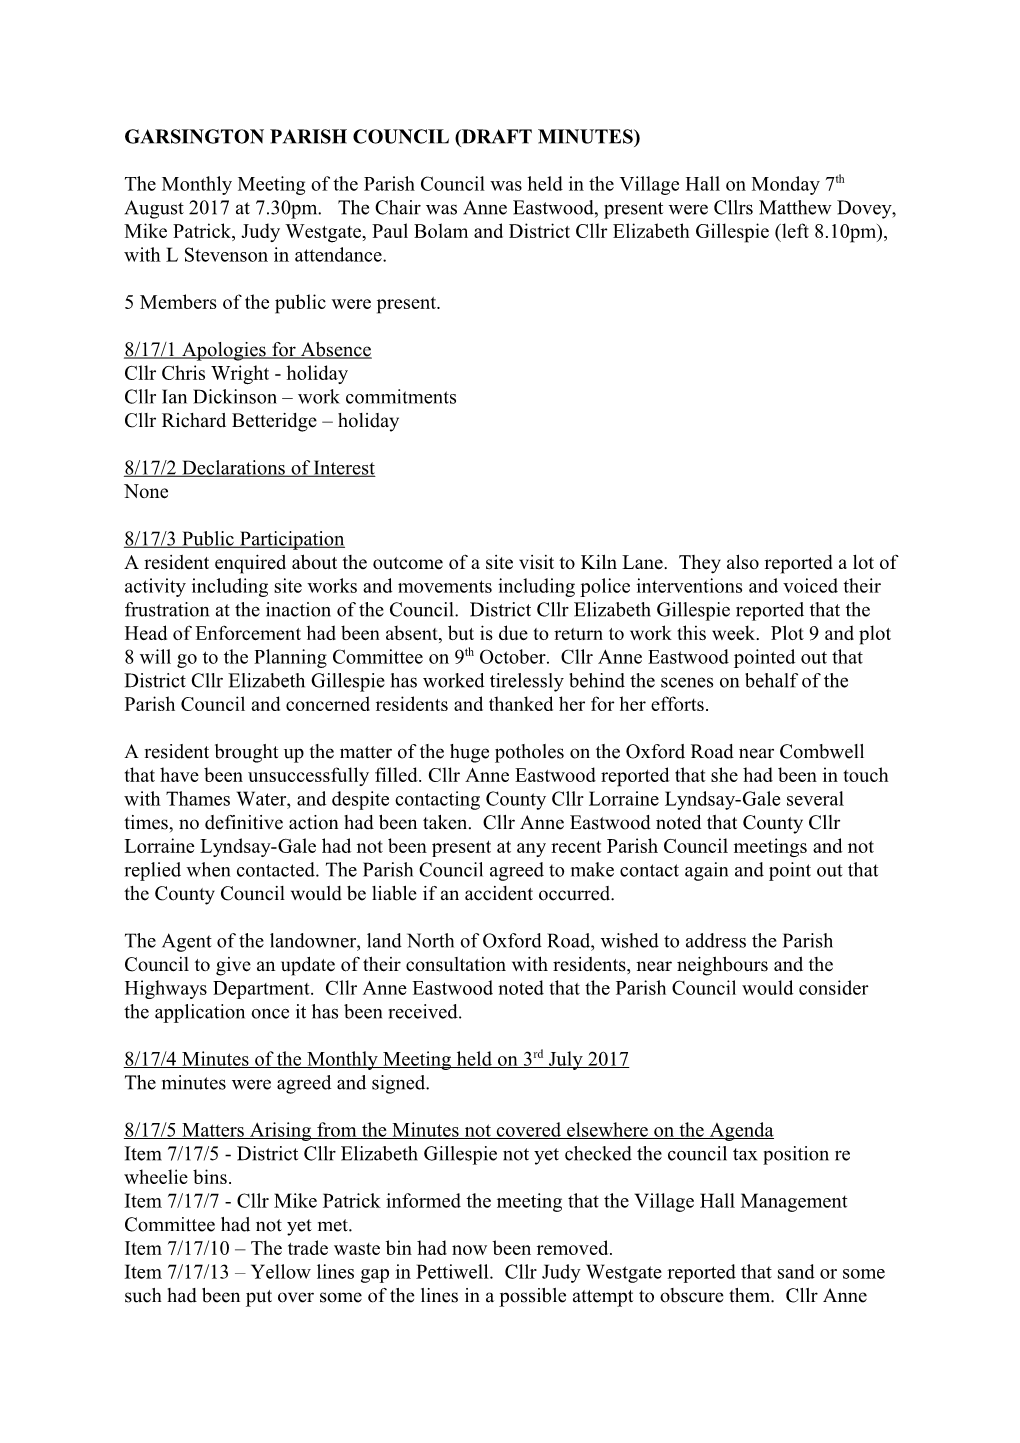 Garsington Paris H Council (Draft Minutes)